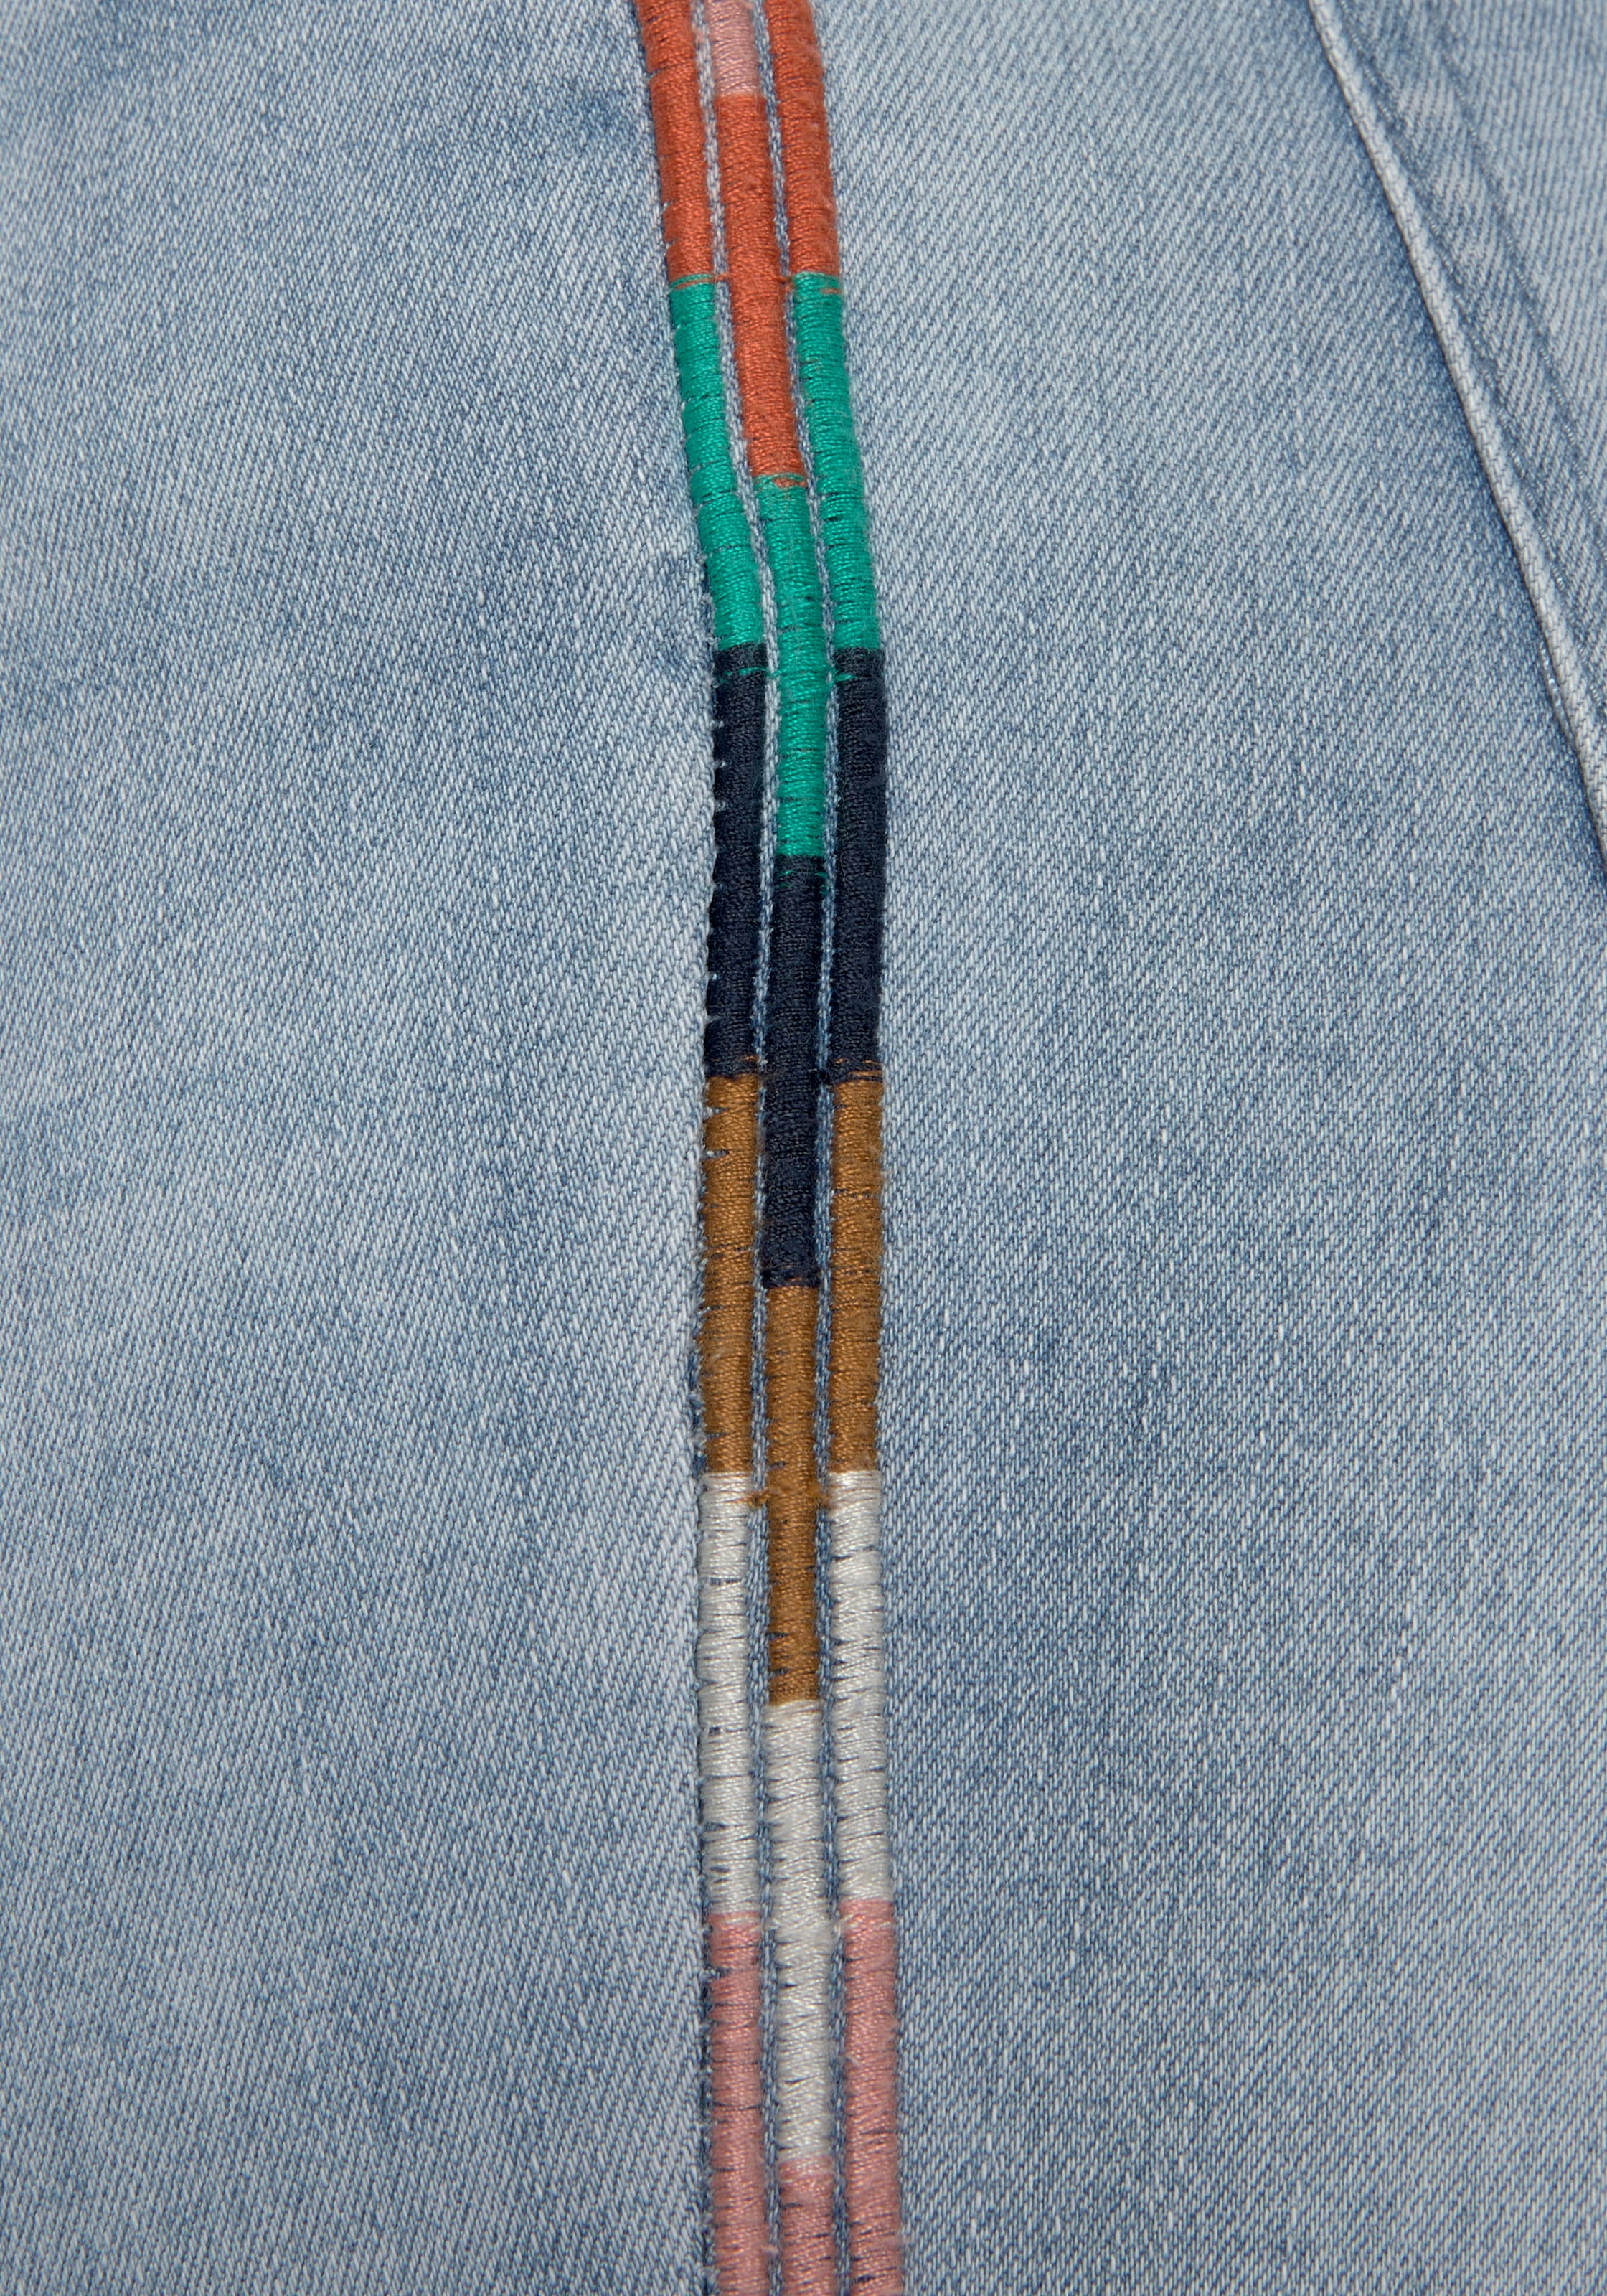 LASCANA High-waist-Jeans, mit seitlicher Stickerei, elastische Skinny-Jeans